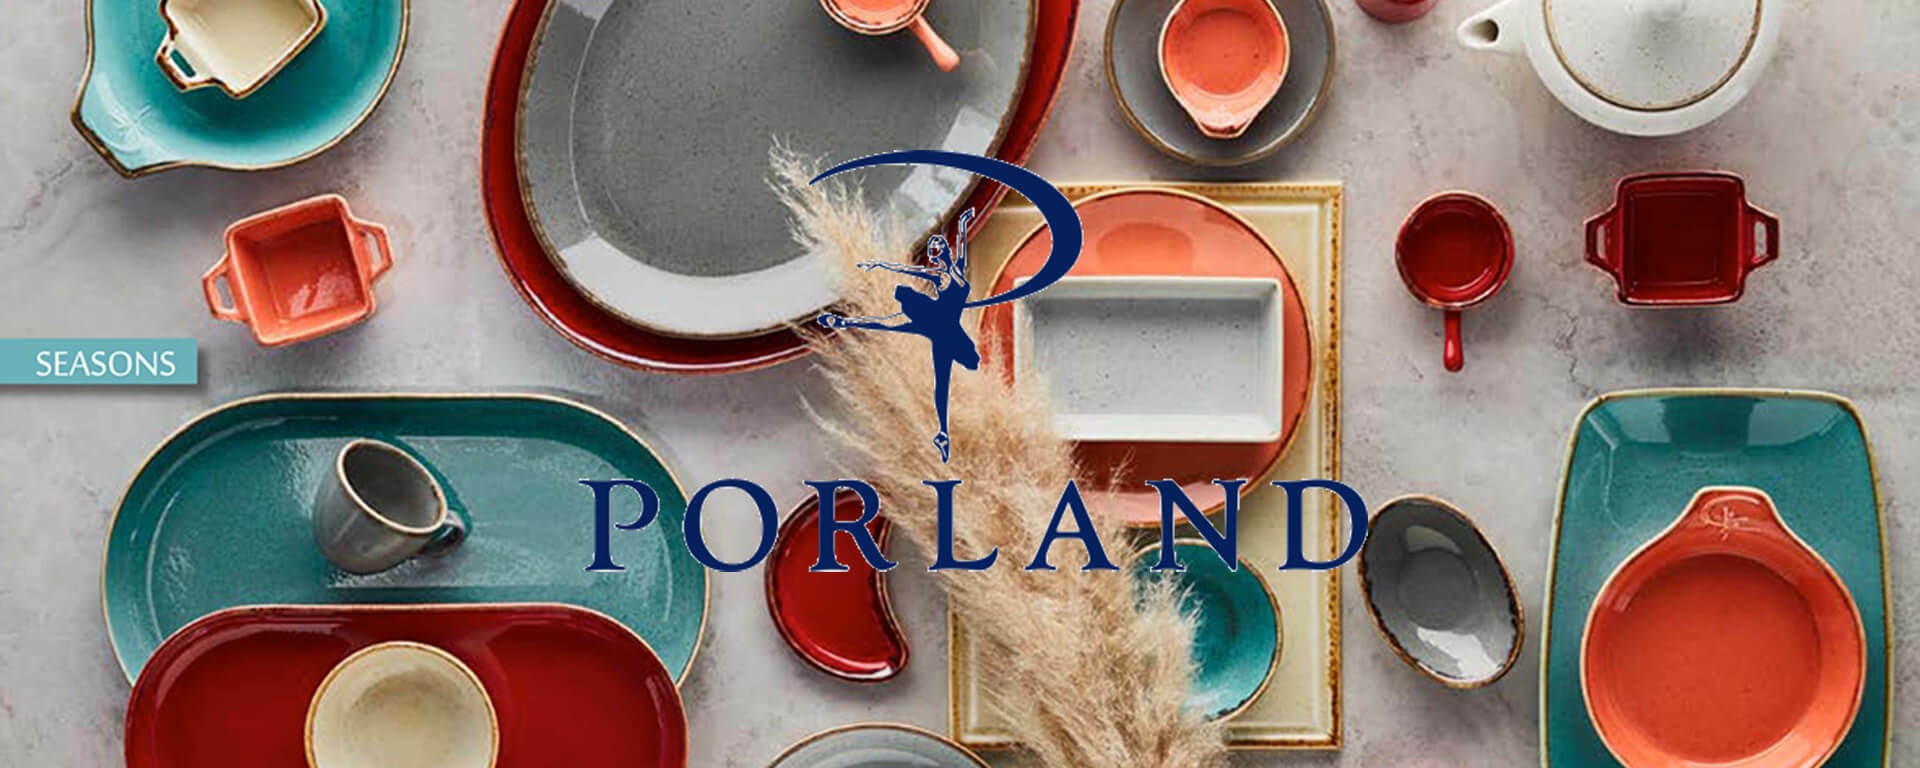 Porland - тарелки, блюда для сервировки, салатники, соусники, чашки, блюдца, чайники, солянки, перечницы, сахарницы